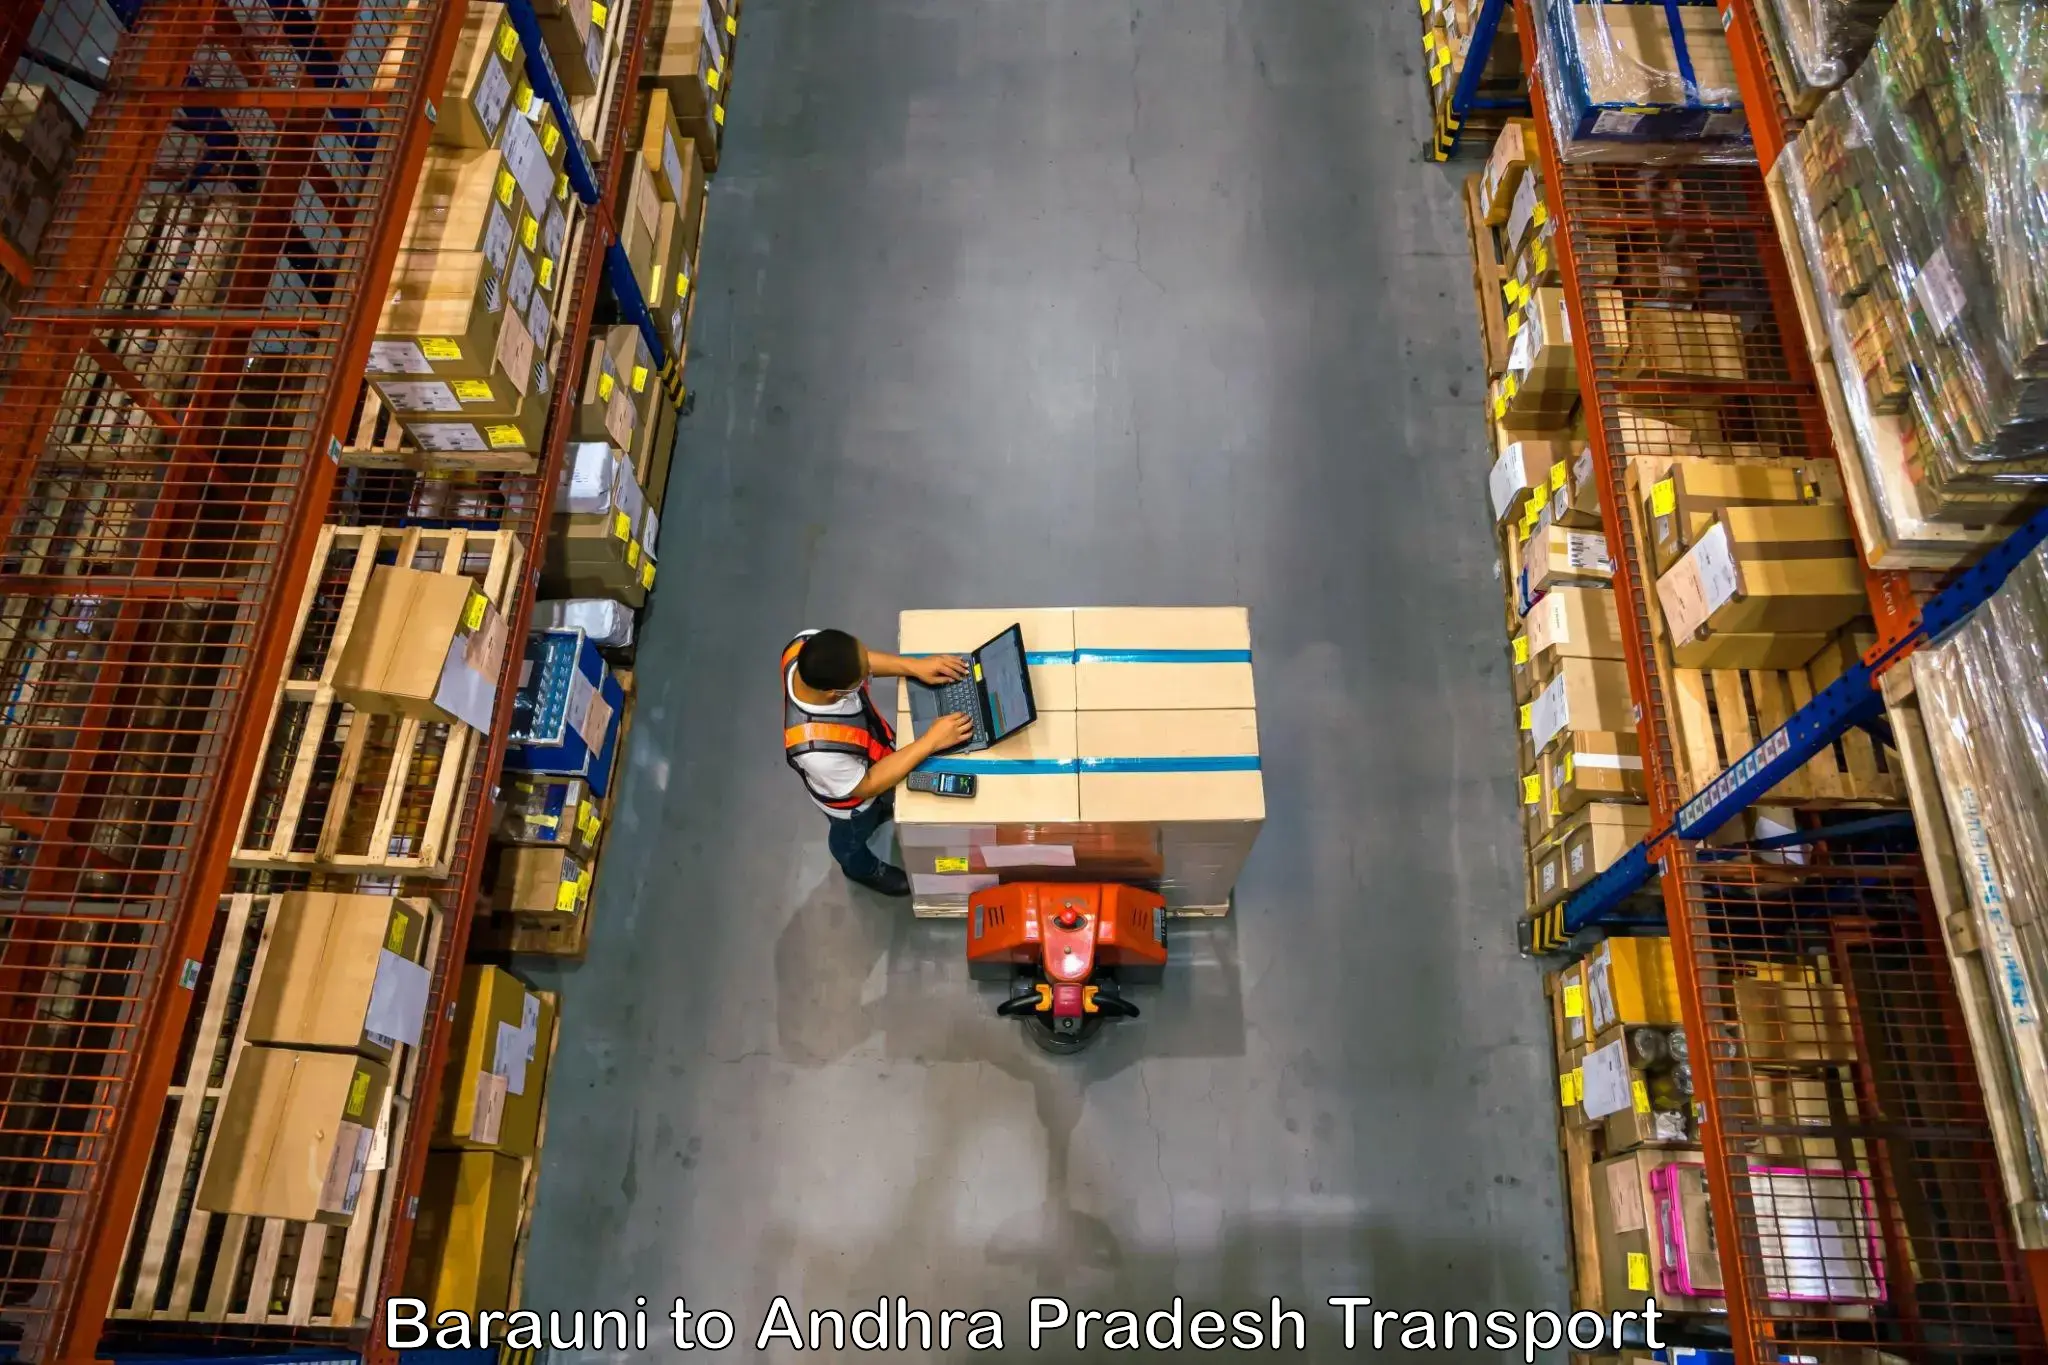 Vehicle parcel service Barauni to Veldurthi